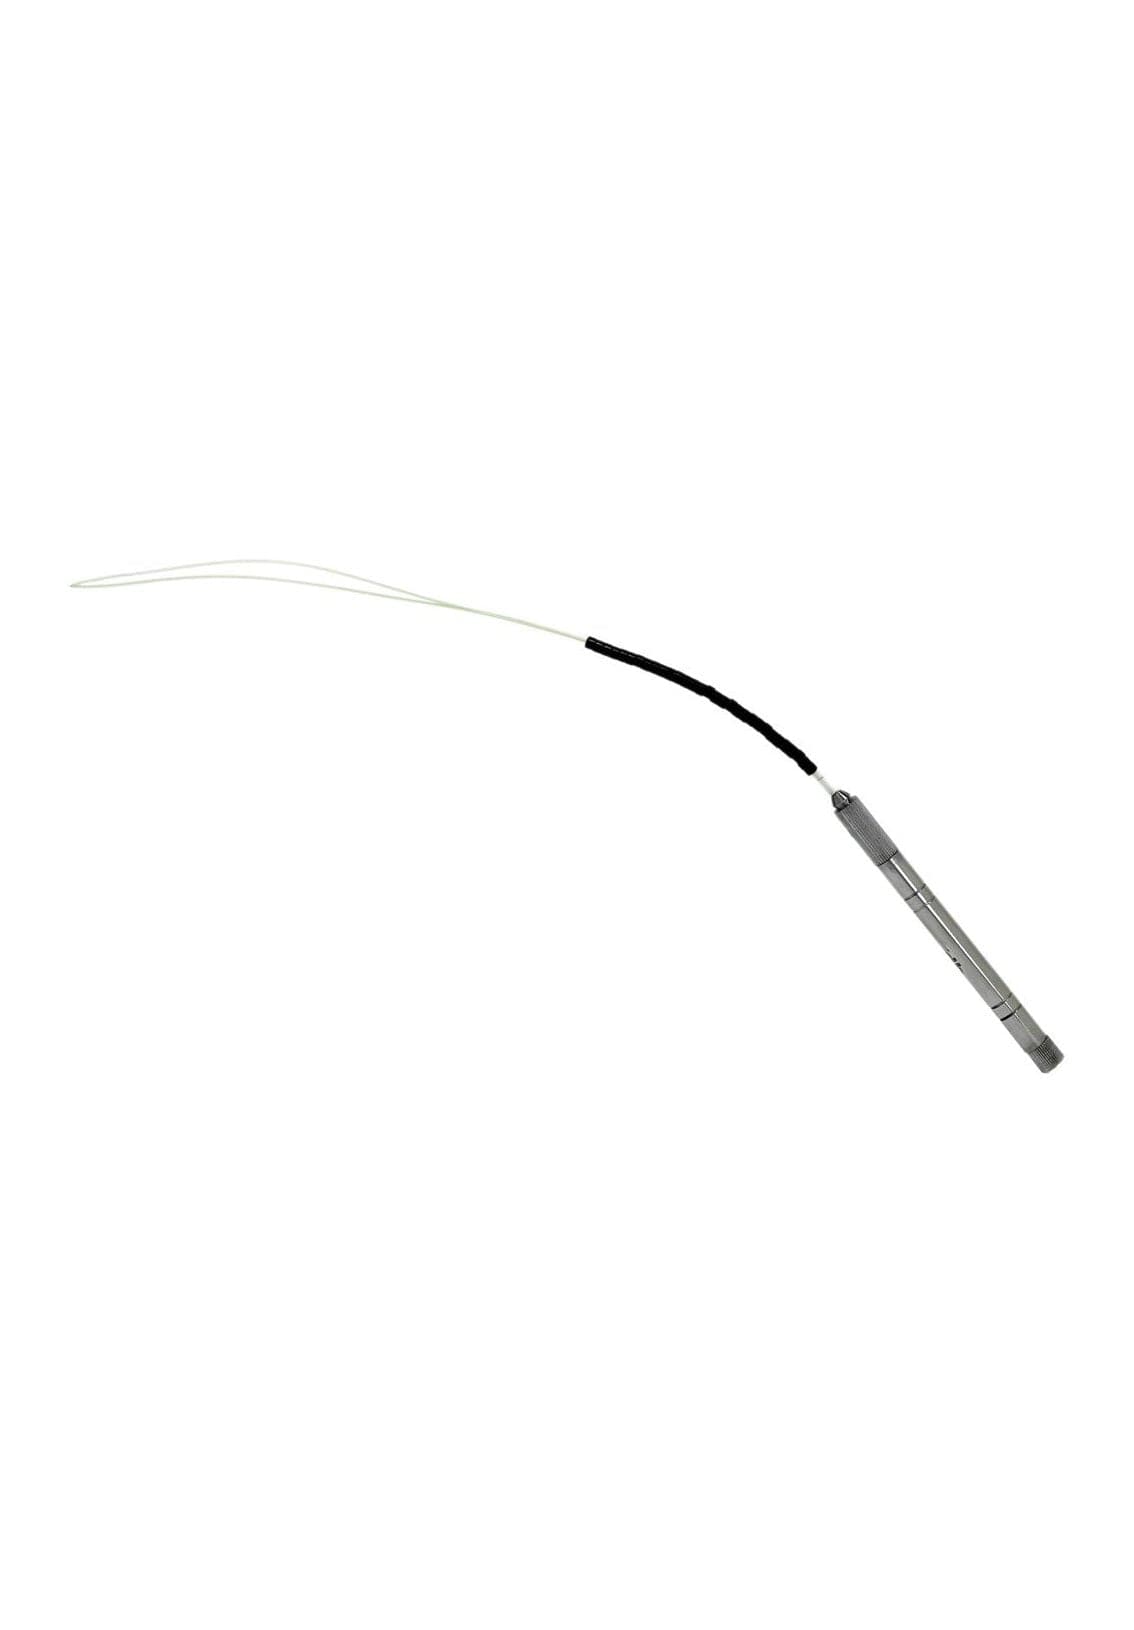 Pulling Loop or Hook Threader Hair Extensions Thread Puller Micro